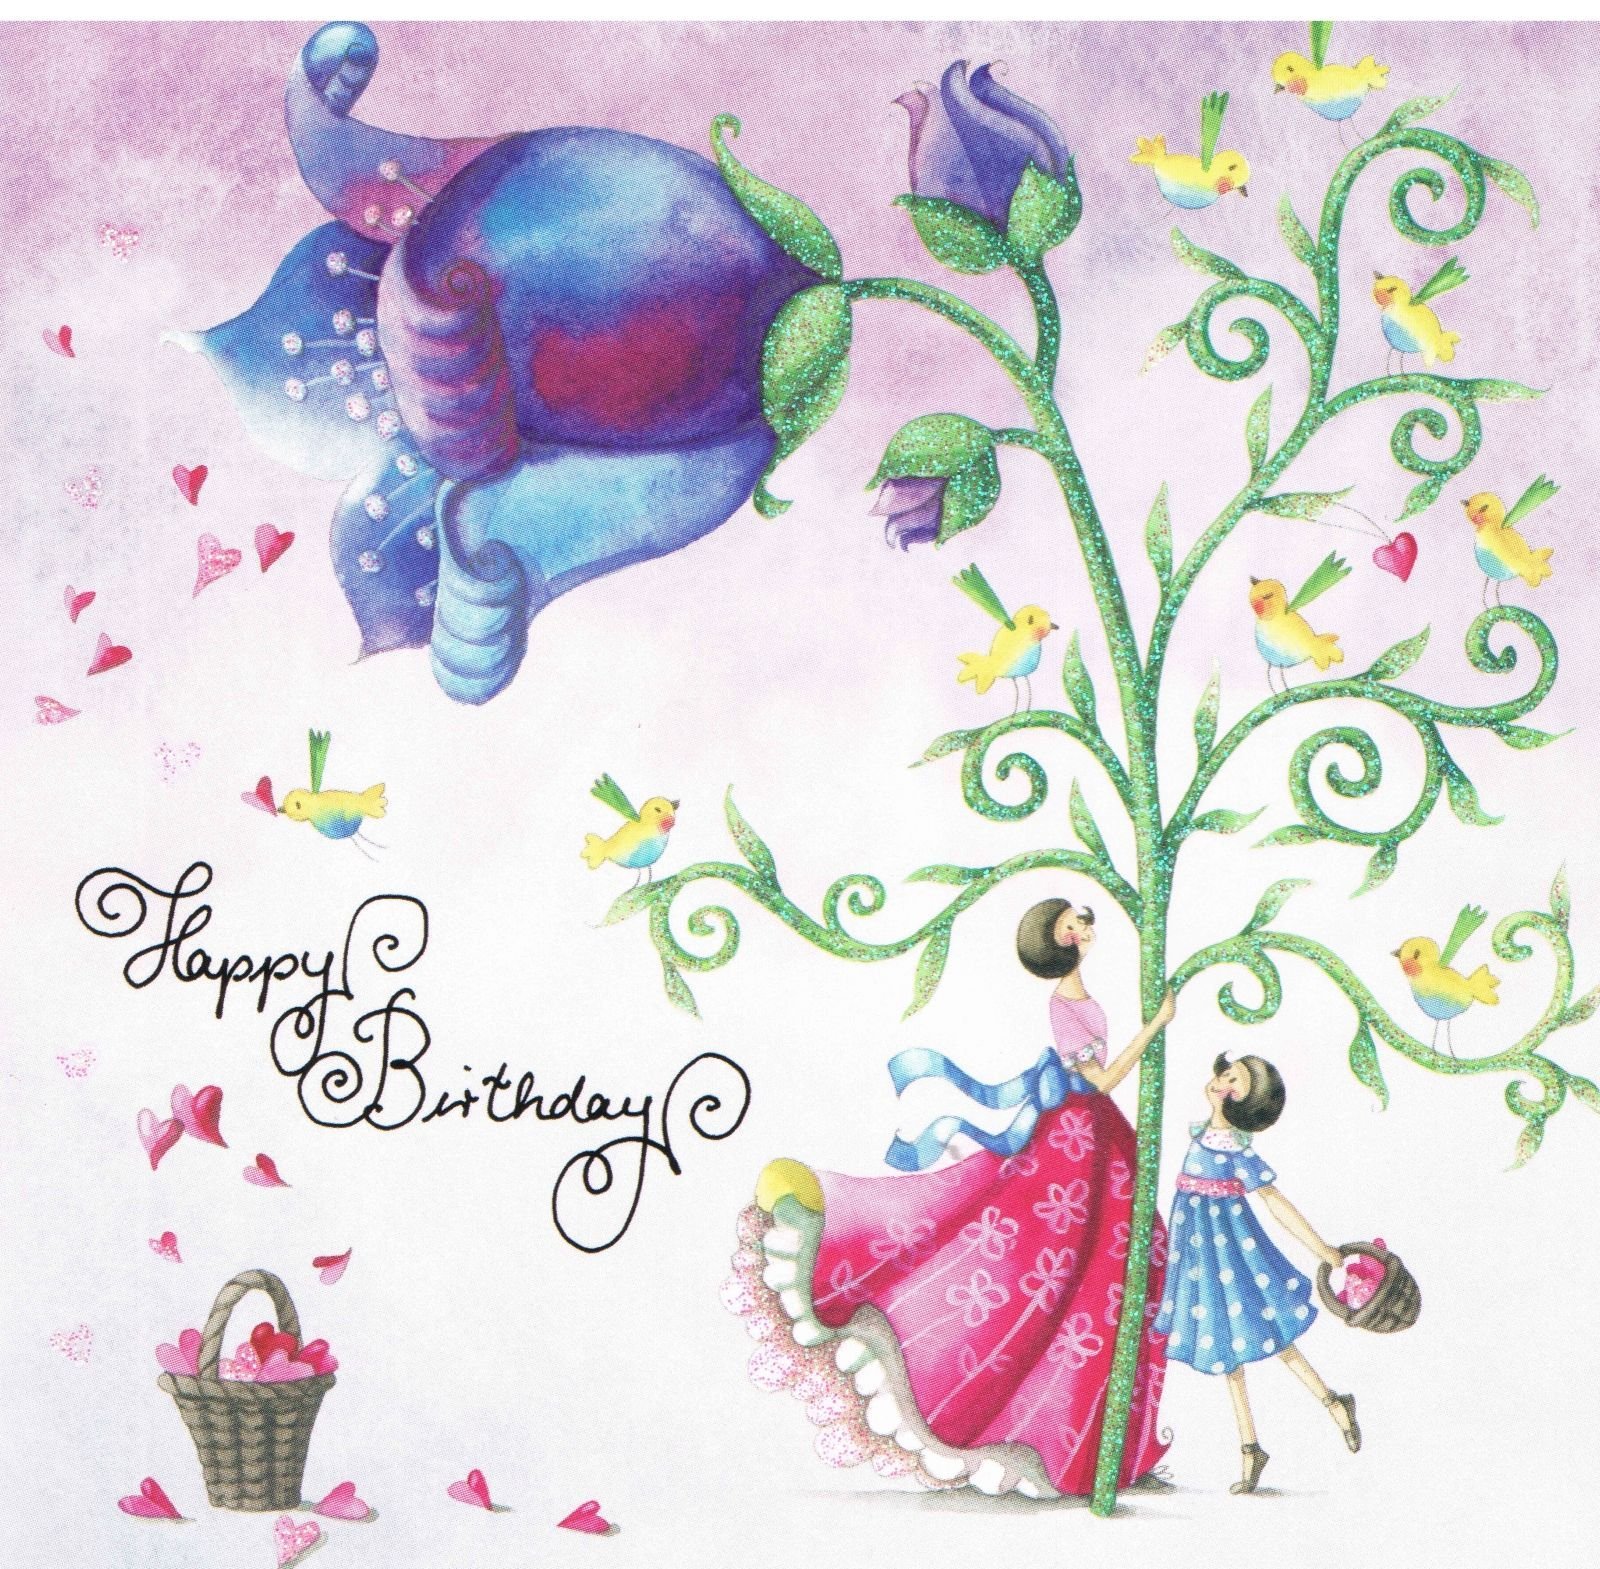 Творческие открытки с днем рождения. Стильные открытки с днем рождения. Модные открытки с днем рождения. Стильное поздравление. Милая открытка с днем рождения.